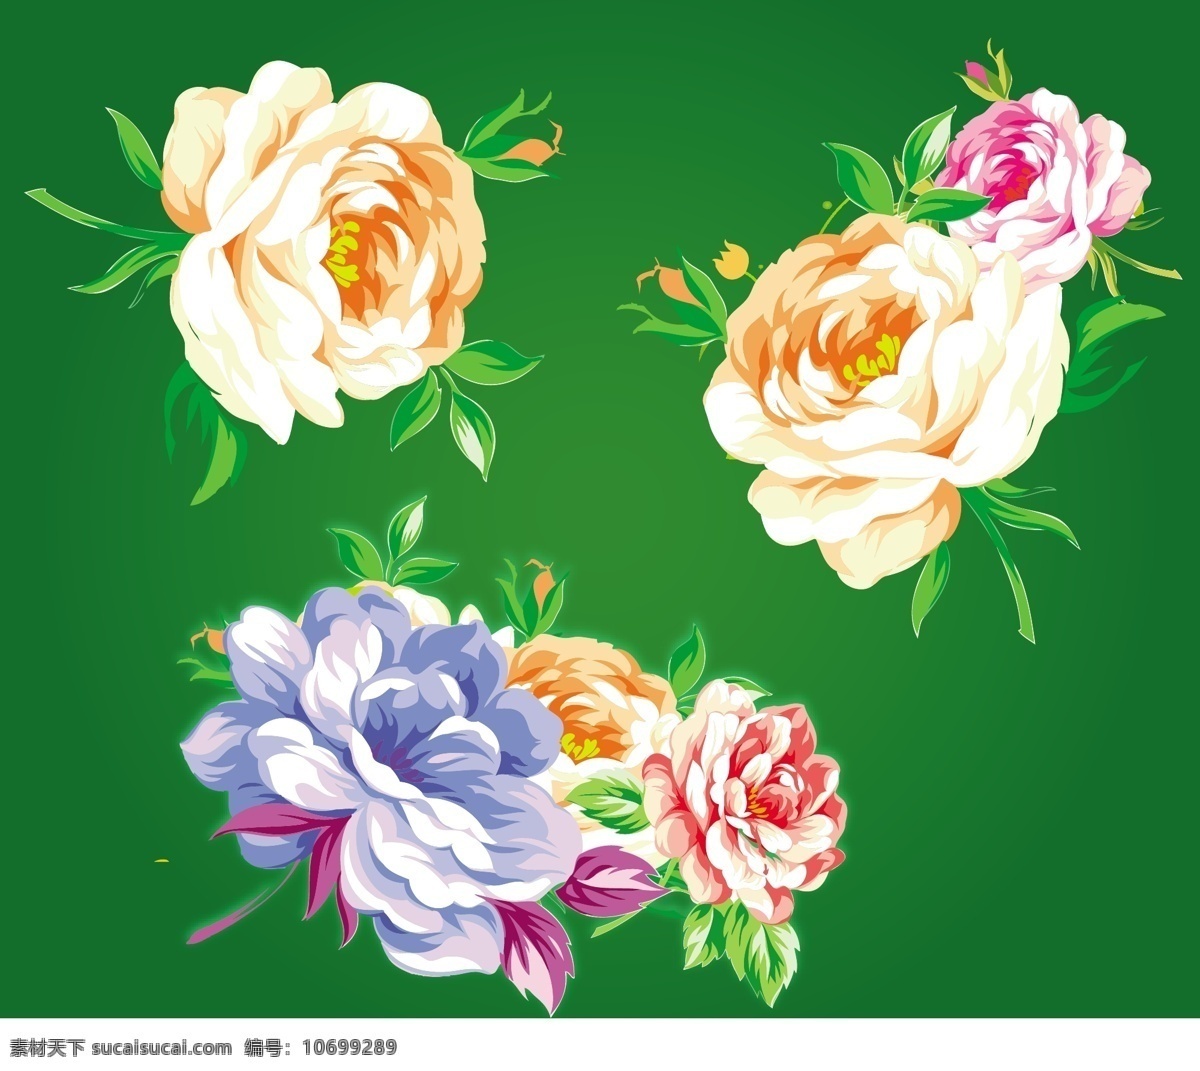 中国 传统 花卉 矢量图 传统图案 商业矢量 矢量下载 网页矢量 其他矢量图